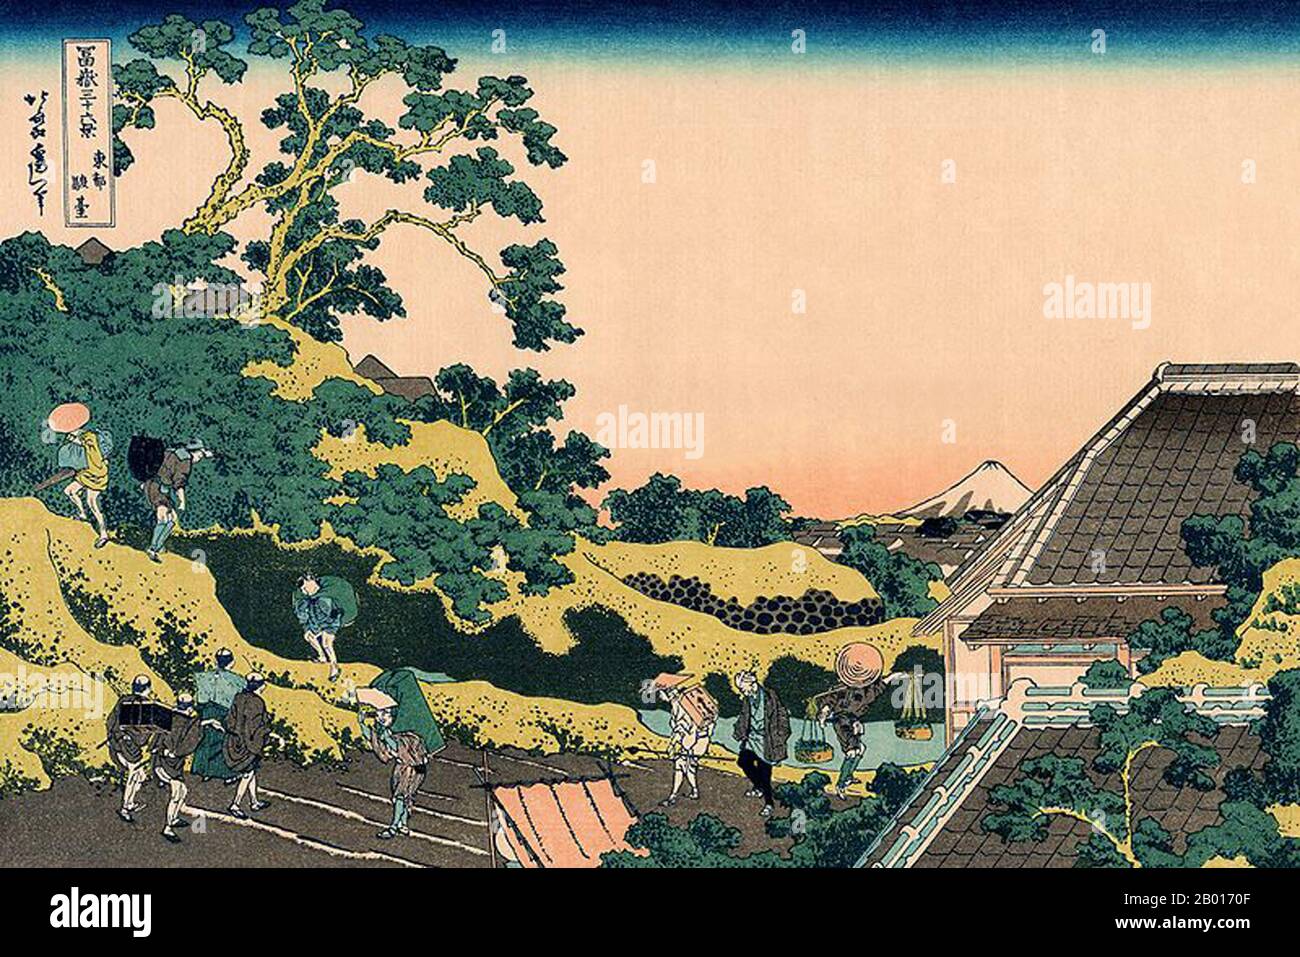 Japan: ‘Sundai, Edo’, auch bekannt als ‘Fuji vom Mishima Pass aus gesehen’. Ukiyo-e Holzschnitt aus der Serie '36 Ansichten des Fuji' von Katsushika Hokusai (31. Oktober 1760 - 10. Mai 1849), c. 1830. Der Fuji ist mit 3.776,24 m (12.389 ft) der höchste Berg Japans. Der Fuji, ein aktiver Stratovulkan, der zuletzt 1707–08 ausbrach, liegt etwa 100 km südwestlich von Tokio. Der außergewöhnlich symmetrische Kegel des Fuji ist ein bekanntes Symbol und Symbol Japans und wird häufig in Kunst und Fotografien dargestellt. Es ist eines der ‘drei Heiligen Berge’ Japans, zusammen mit dem Berg Tate und dem Berg Haku. Stockfoto